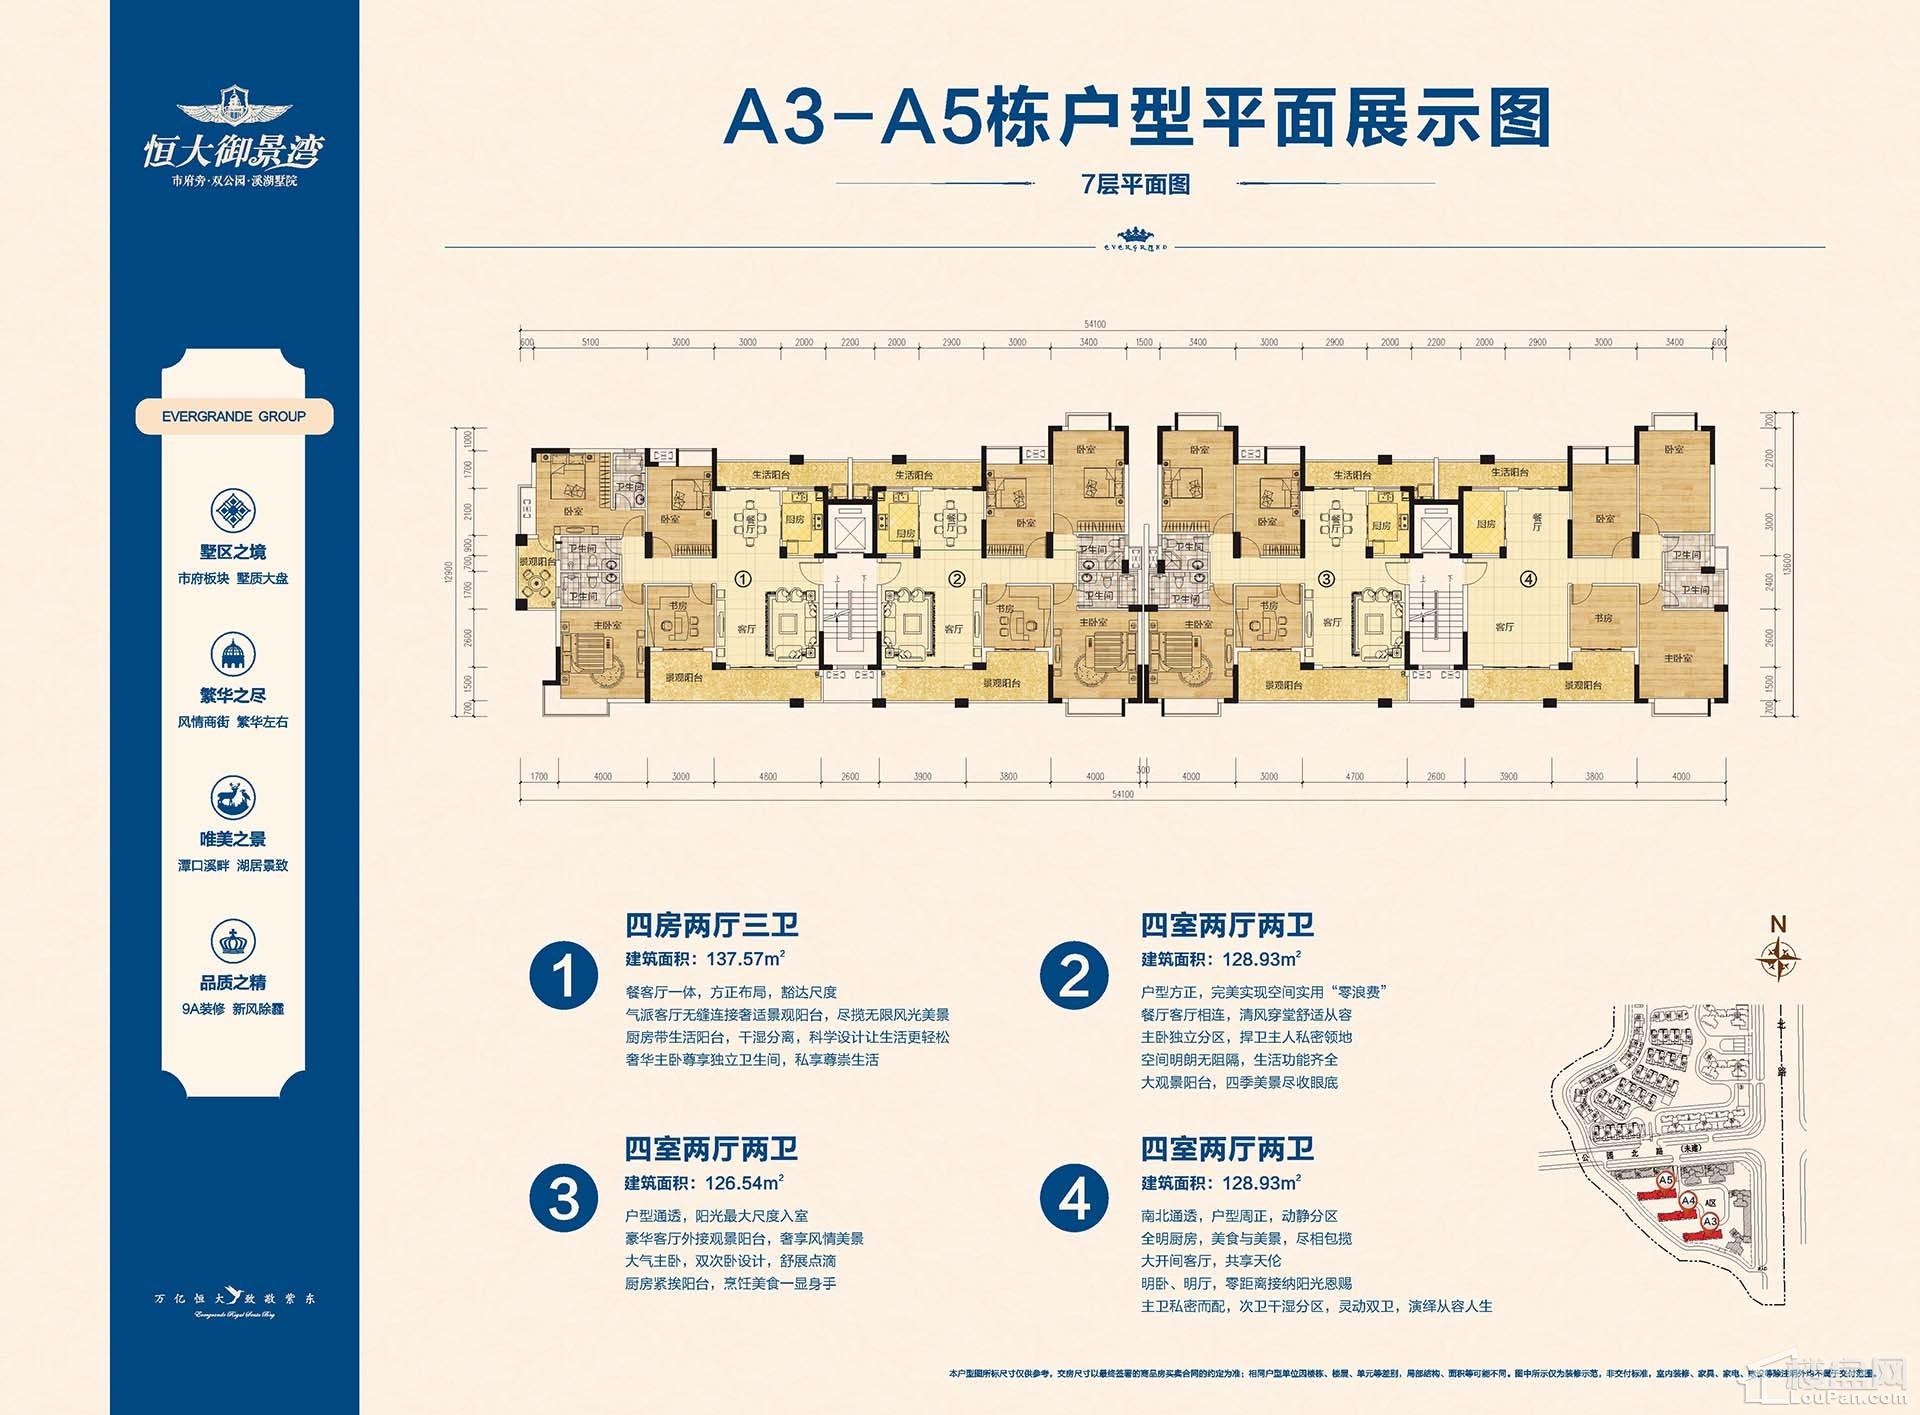 A3-A5栋7层平面图